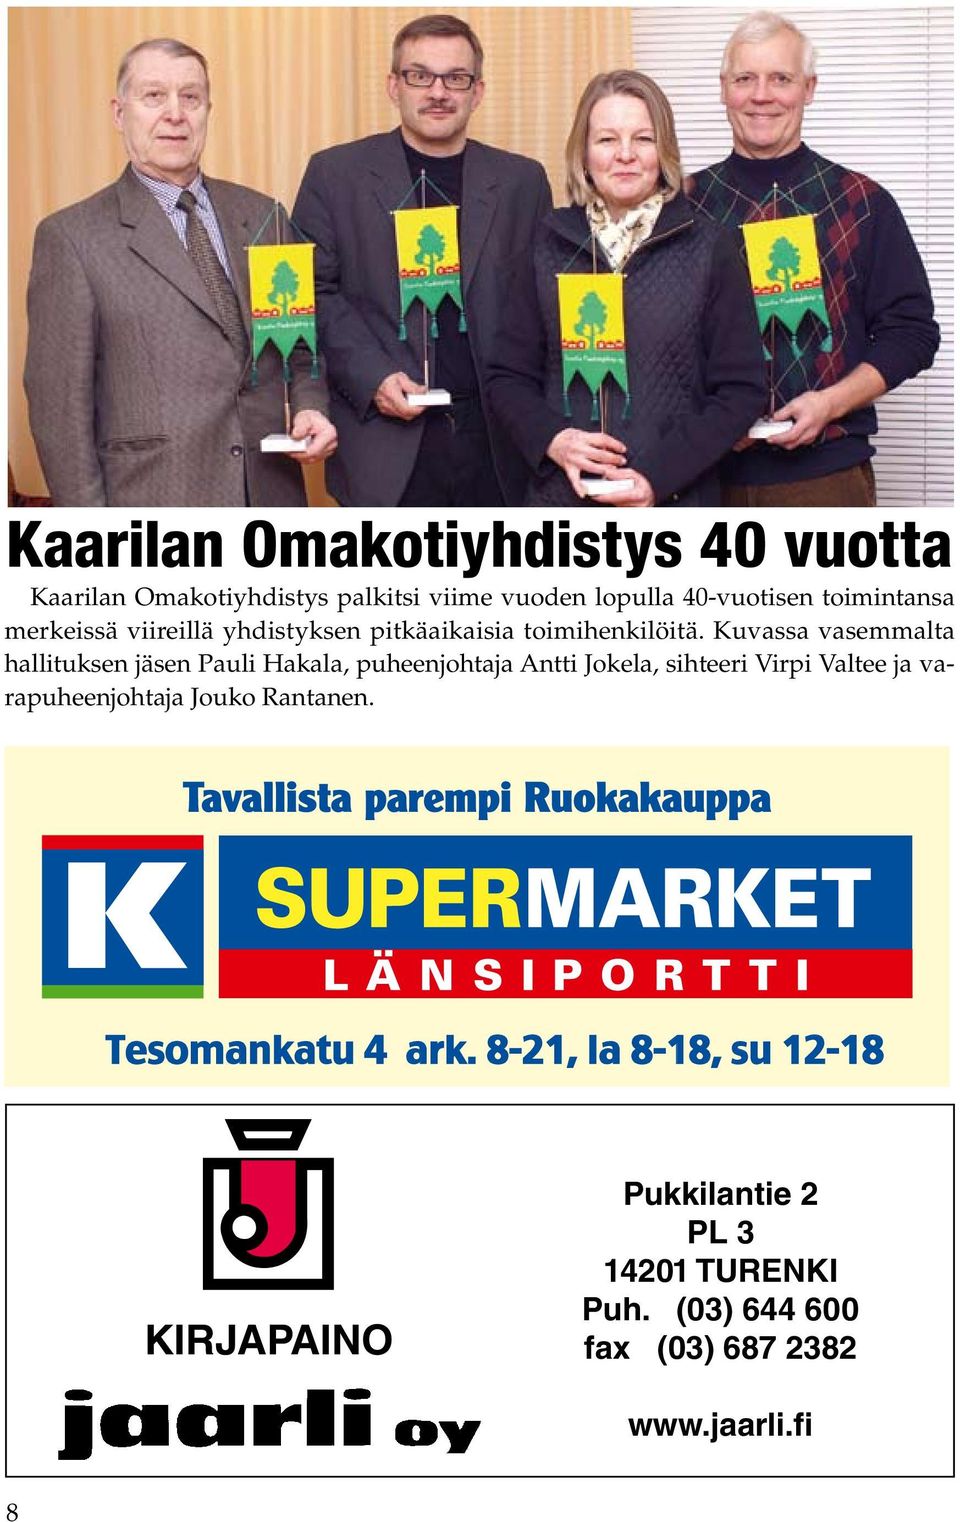 Kuvassa vasemmalta hallituksen jäsen Pauli Hakala, puheenjohtaja Antti Jokela, sihteeri Virpi Valtee ja